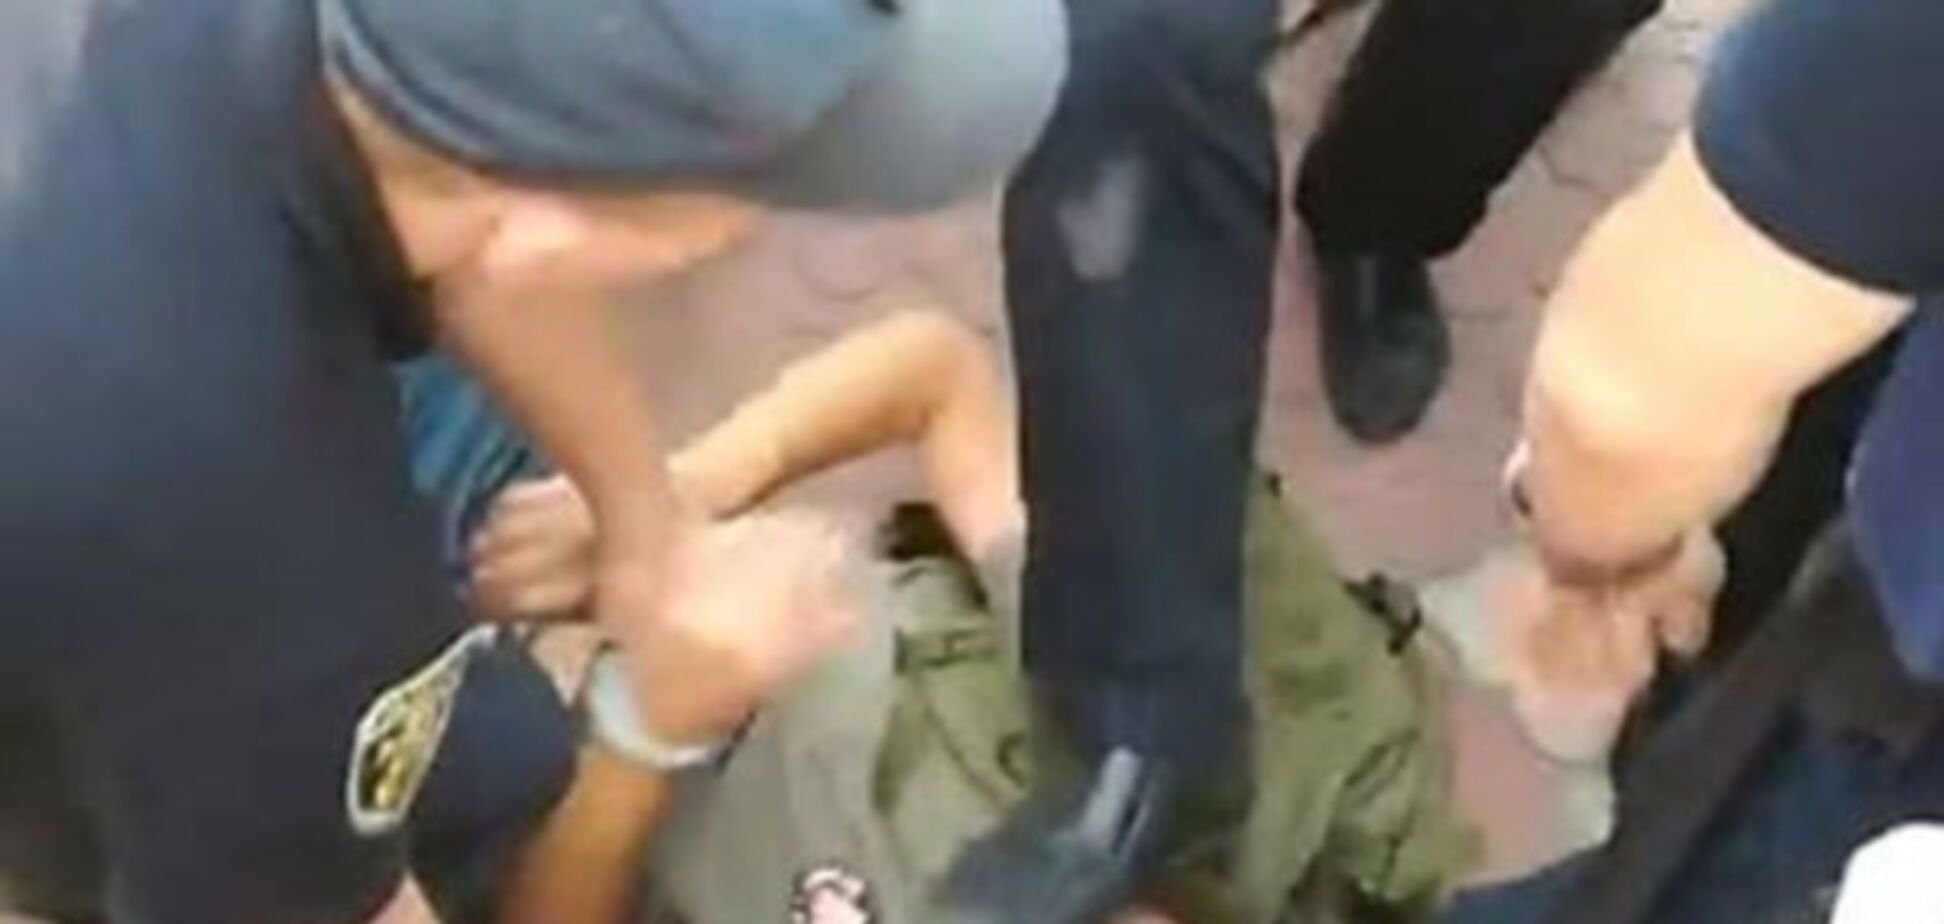 Потасовка из-за Савченко: в Николаеве патрульный ногой наступил на лицо добровольцу. Видеофакт